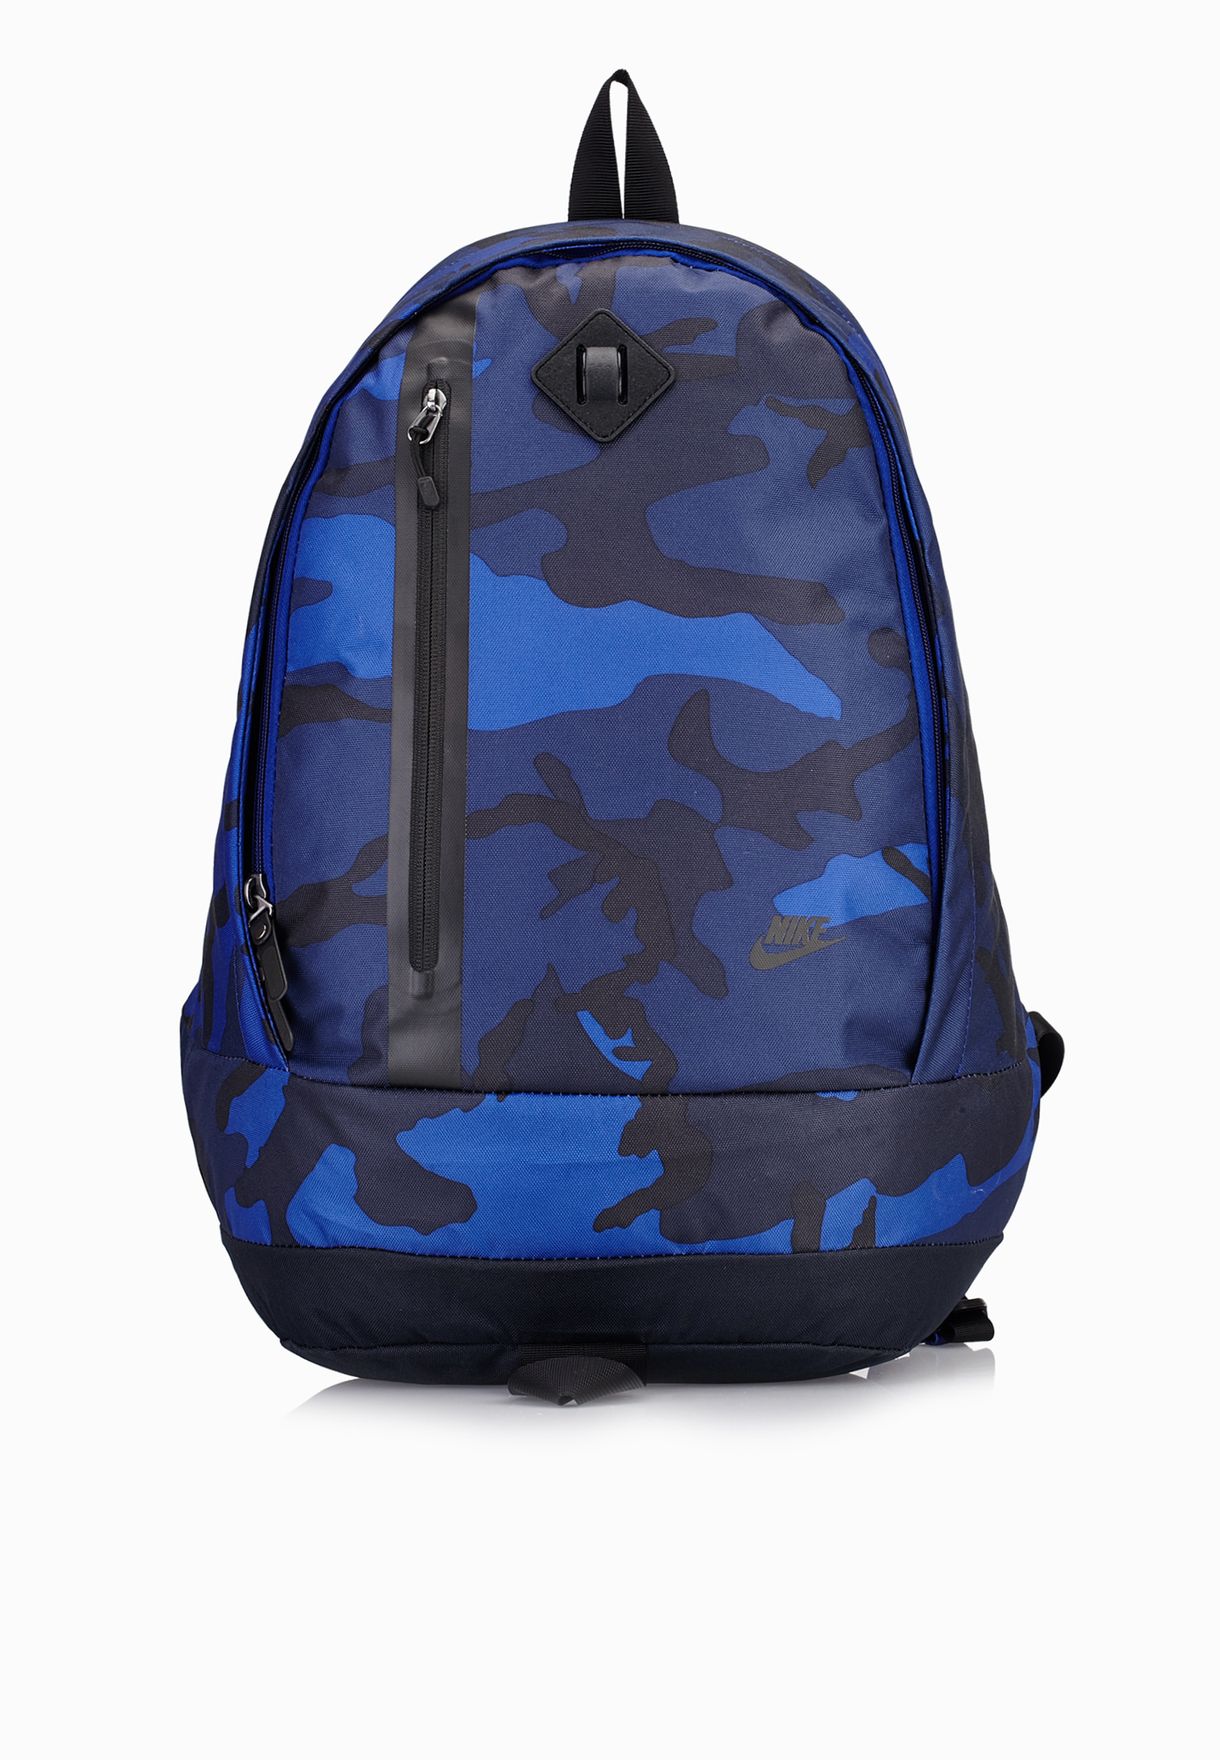 nike backpack cheyenne blue 